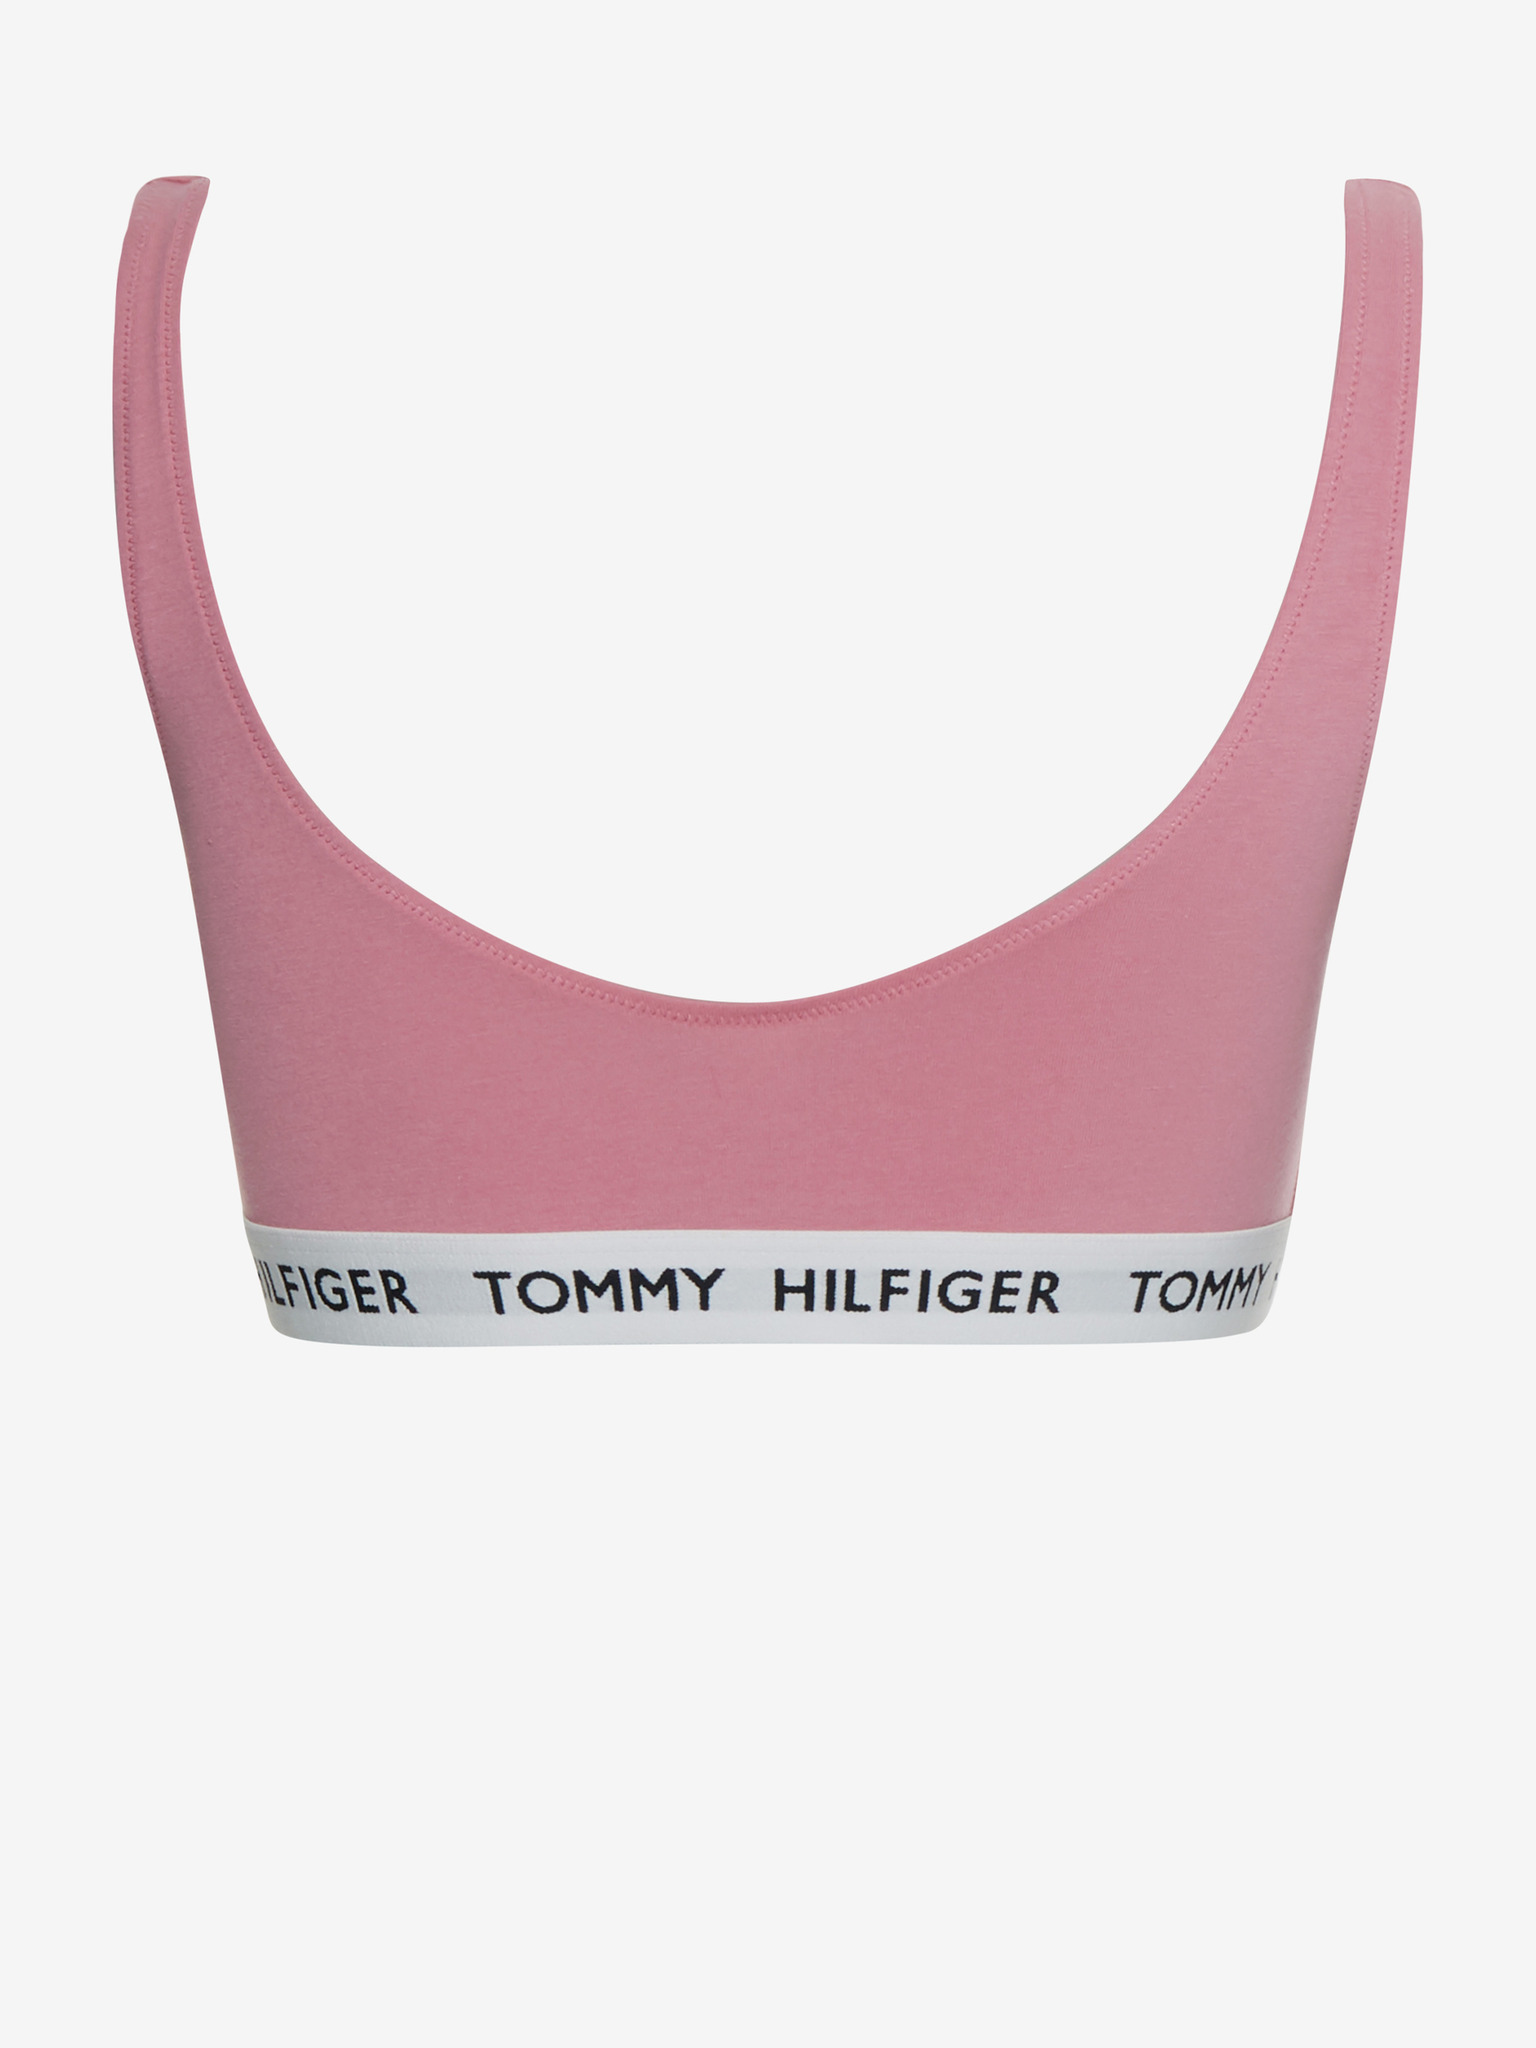 Tommy Hilfiger Underwear - Bra